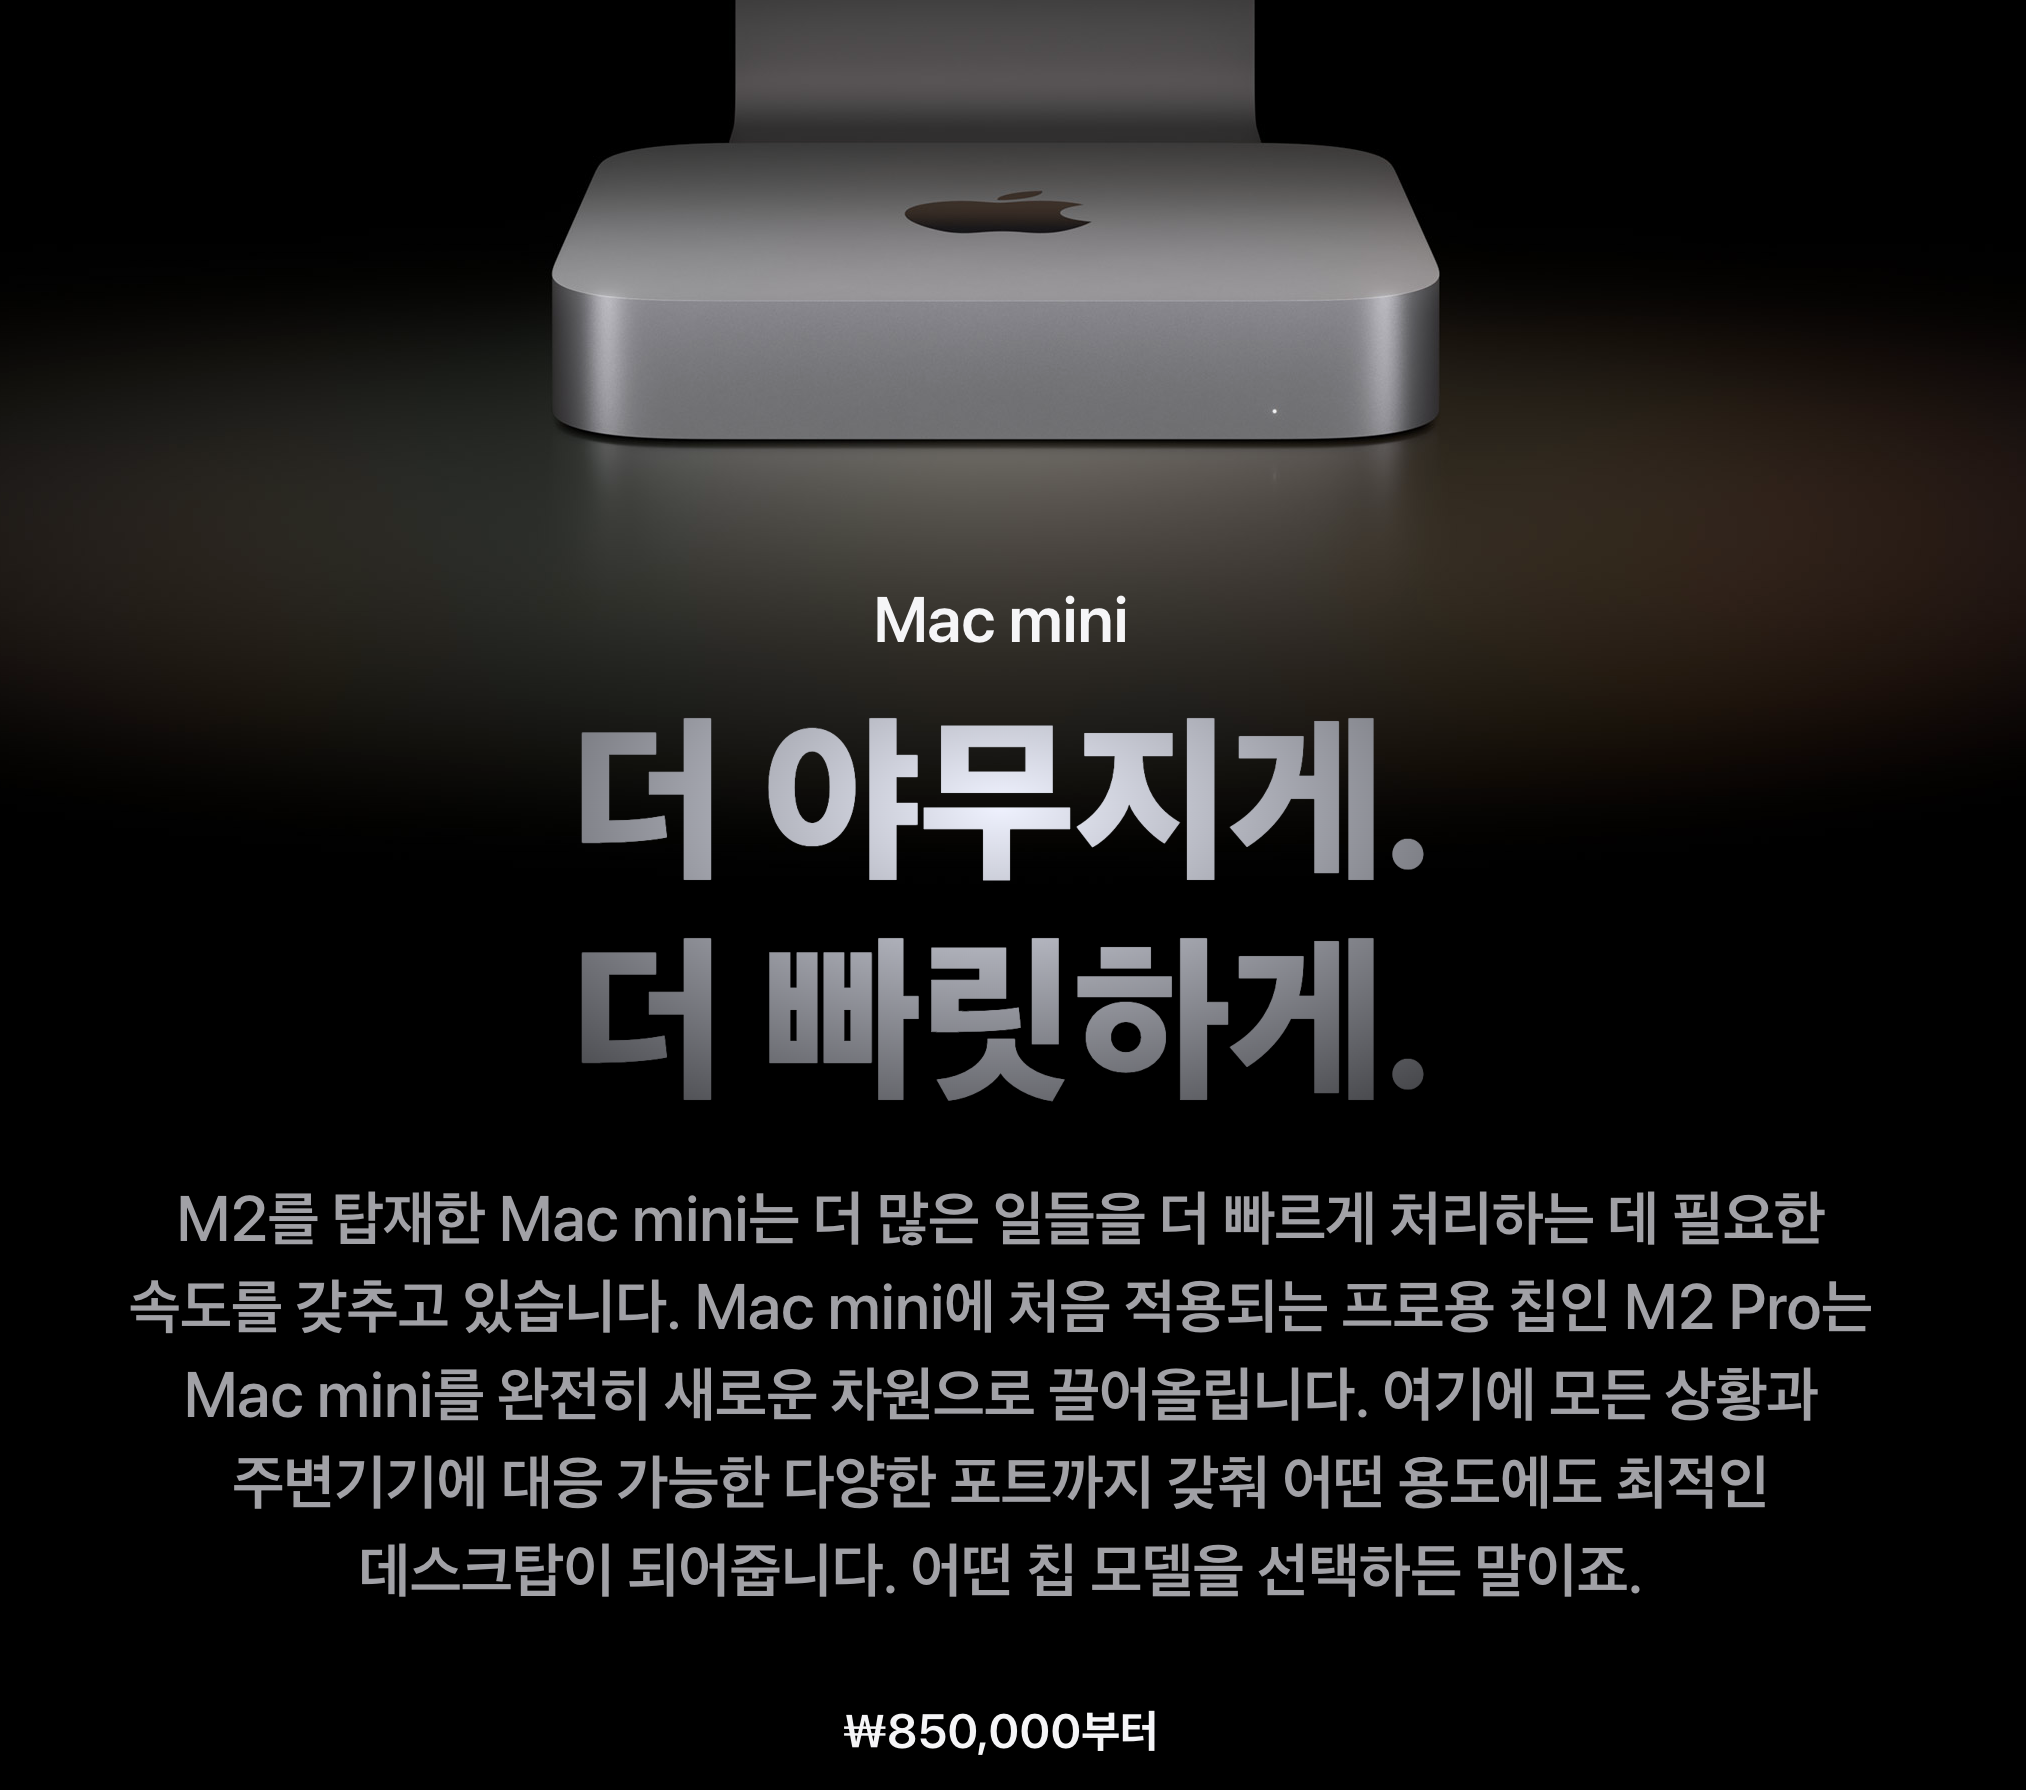 애플사이트 맥미니 소개